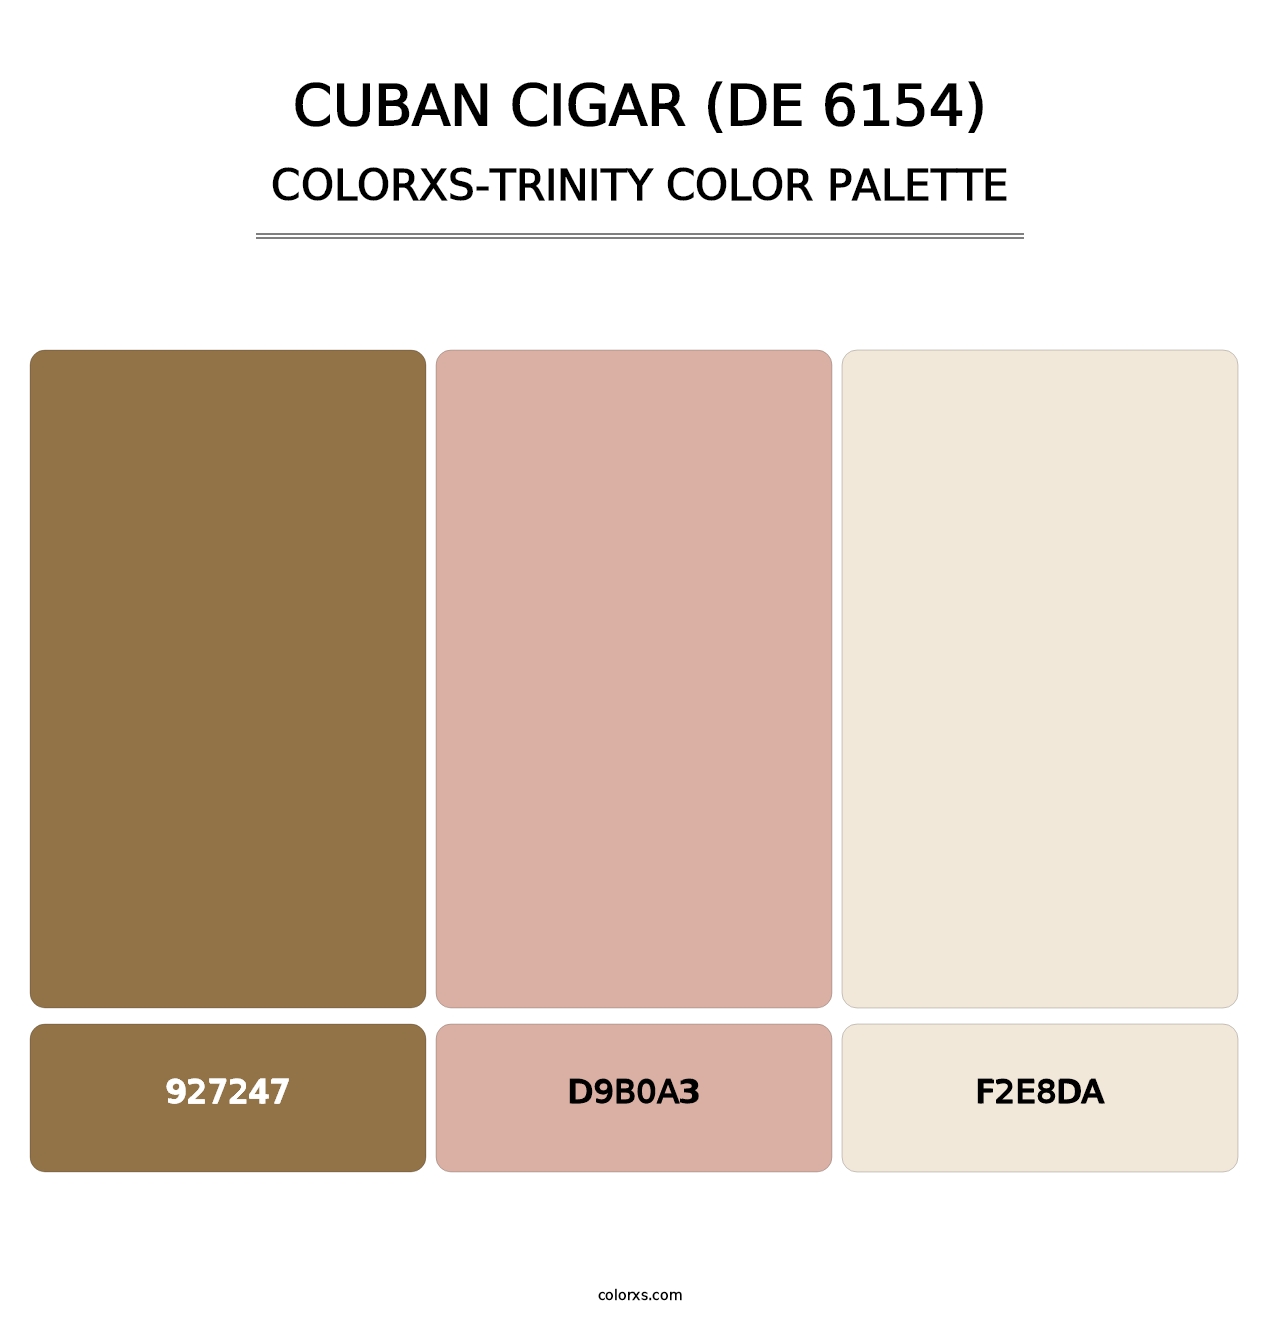 Cuban Cigar (DE 6154) - Colorxs Trinity Palette